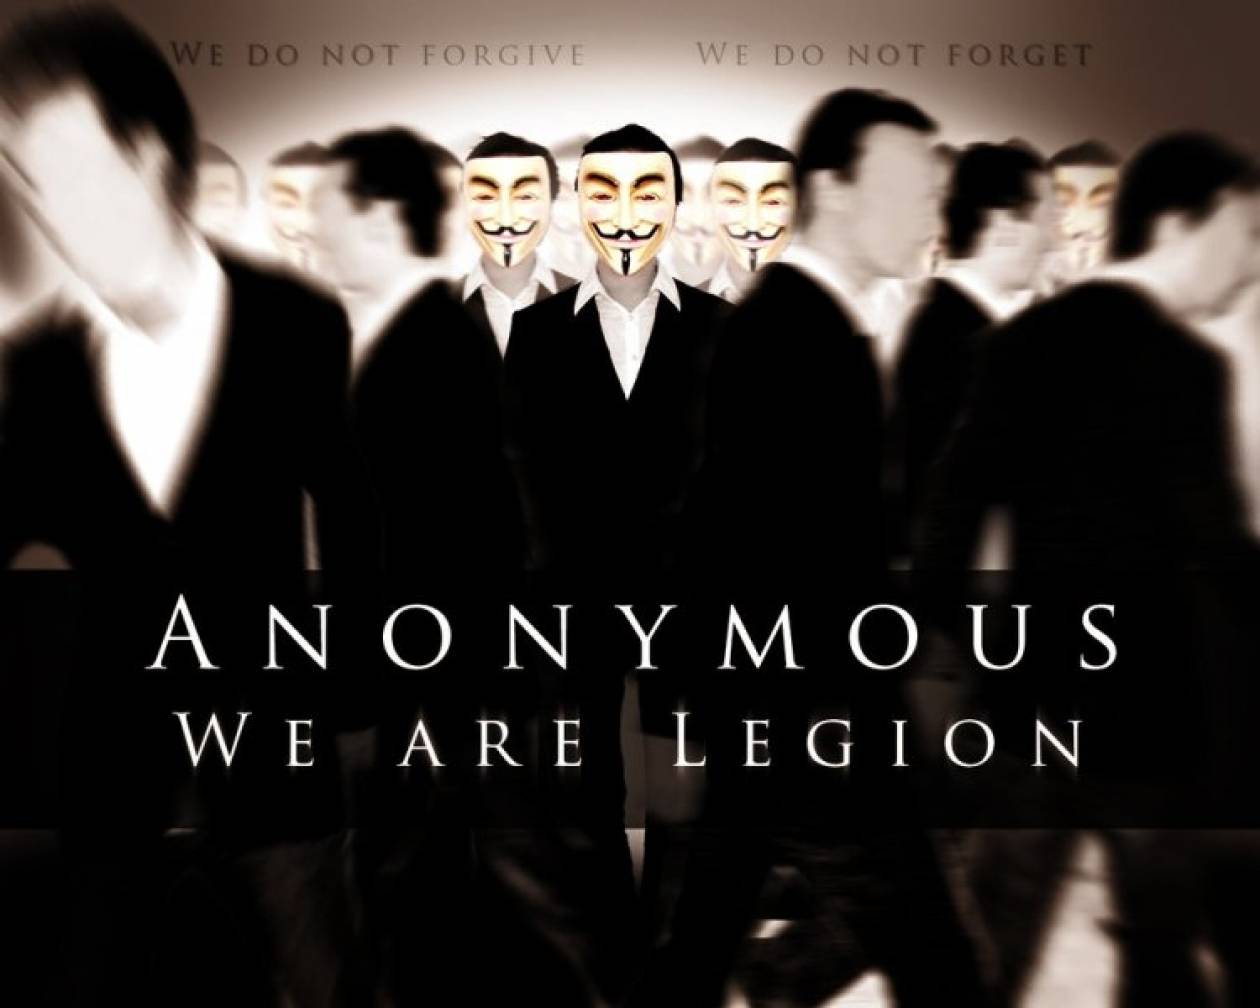 Οι Anonymoys «χτύπησαν» κυβερνητικές ιστοσελίδες της Βραζιλίας